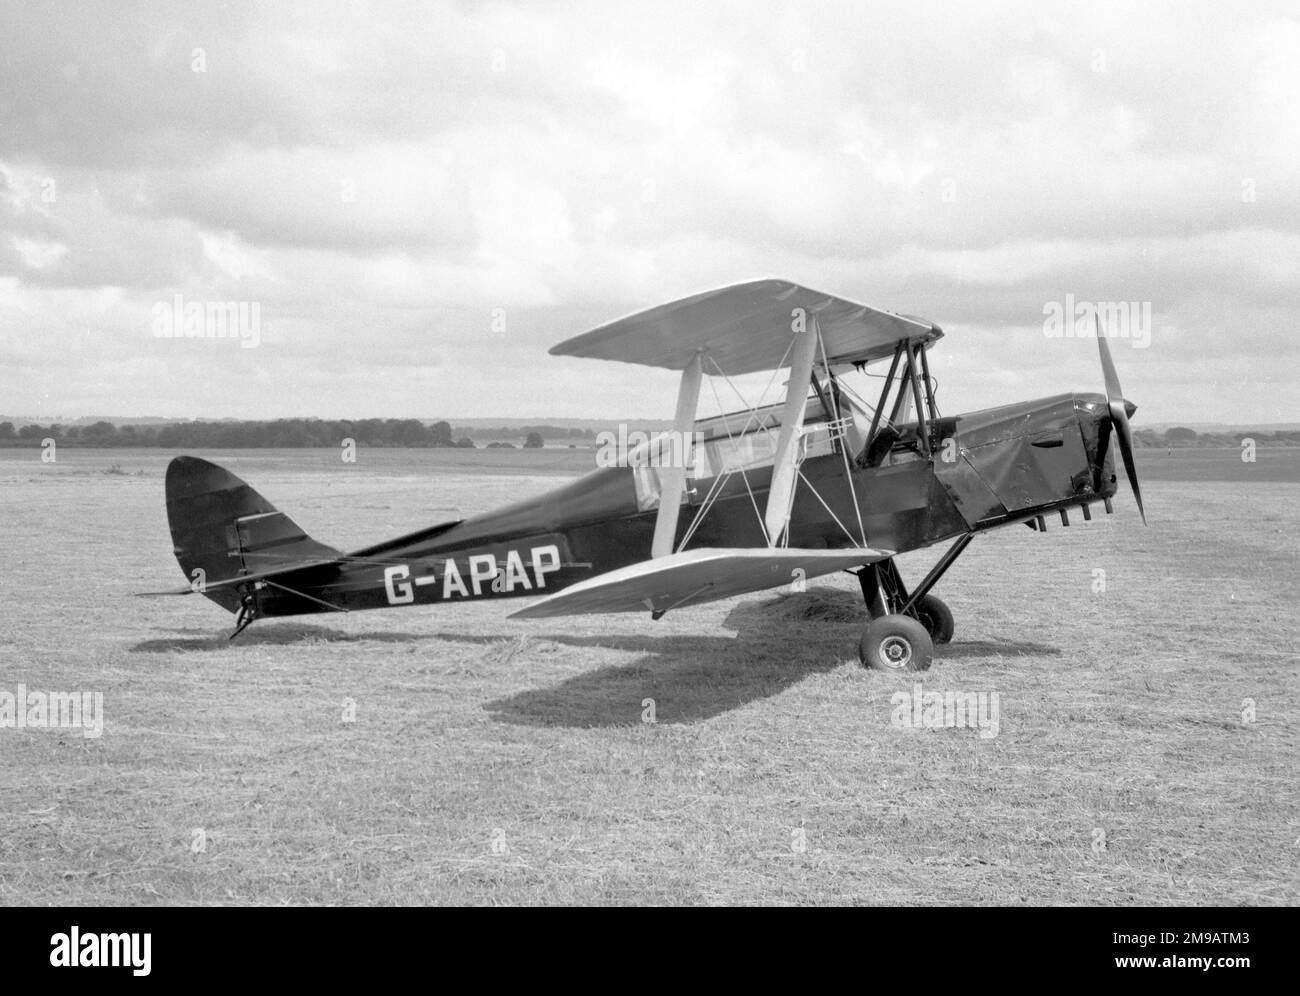 Thruxton Jackaroo G-APAP (msn 83018), (modified from de Havilland DH.82a Tiger Moth R5136). Stock Photo